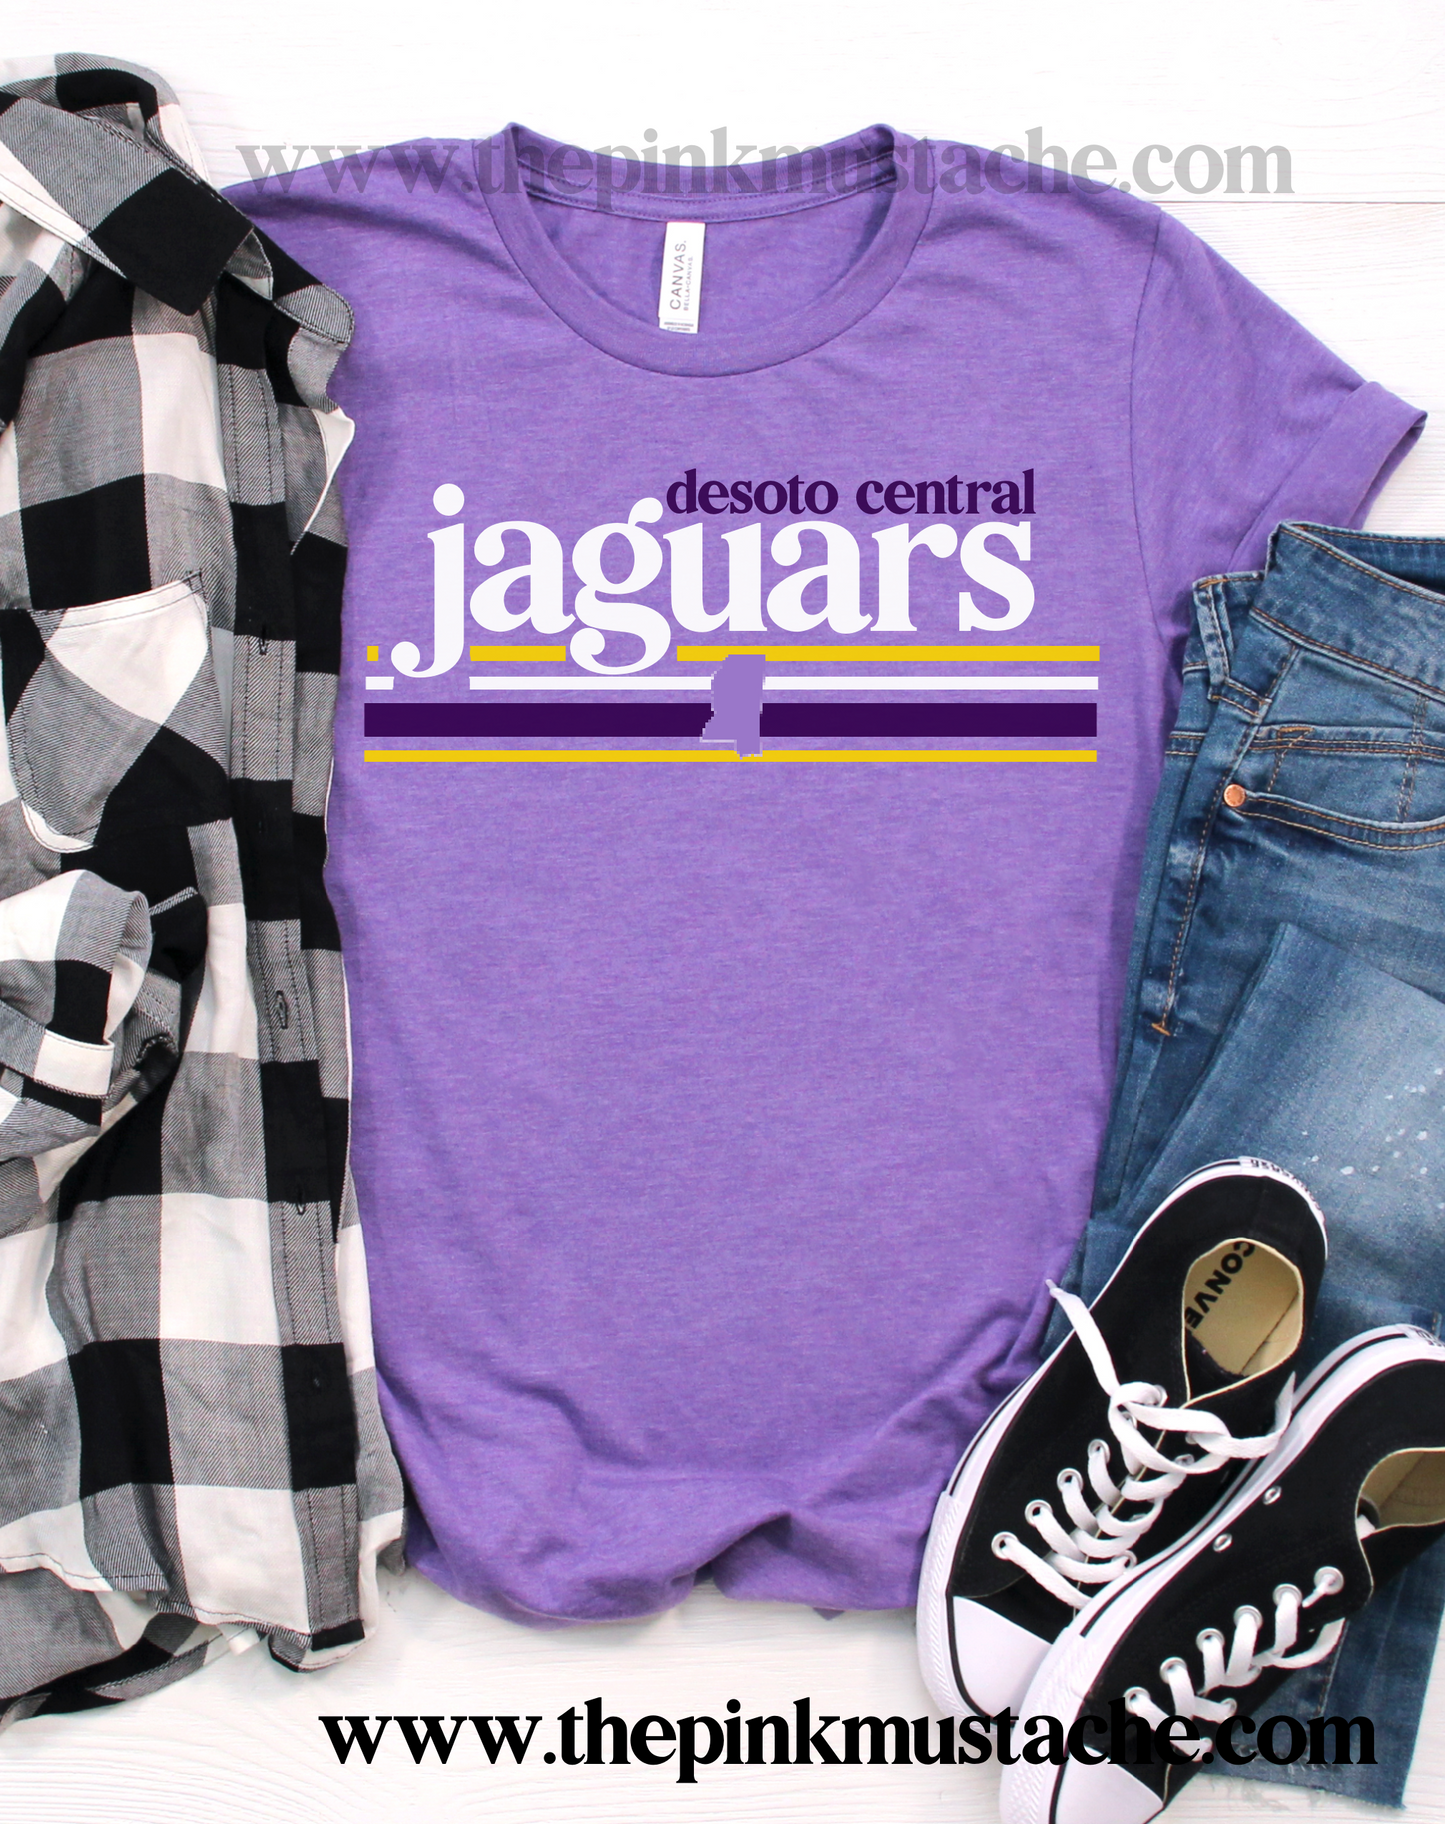 Desoto Central Jaguars Shirt / DC -Desoto Central Schools / Mississippi School Shirt